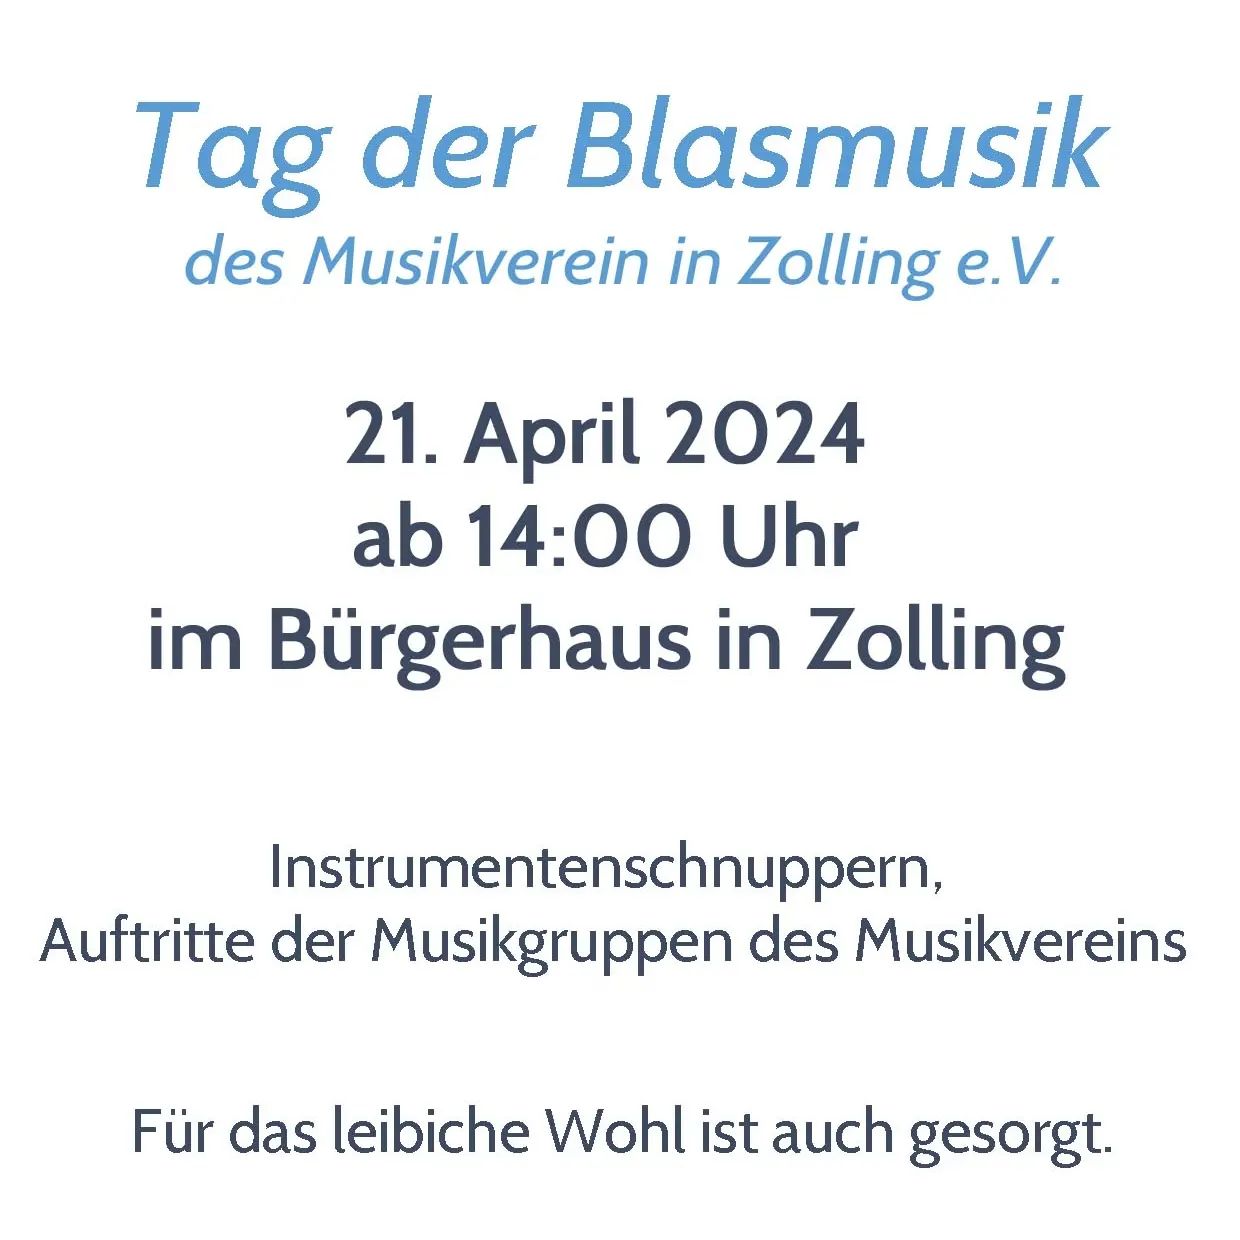 Im Rahmen seines 35-jährigen Jubiläums veranstaltet der Musikverein am 21. April von 14- 18 Uhr den Tag der Blasmusik im Bürgerhaus in Zolling.
Es wird ein buntes Rahmenprogramm geboten. Neben den Auftritten ...